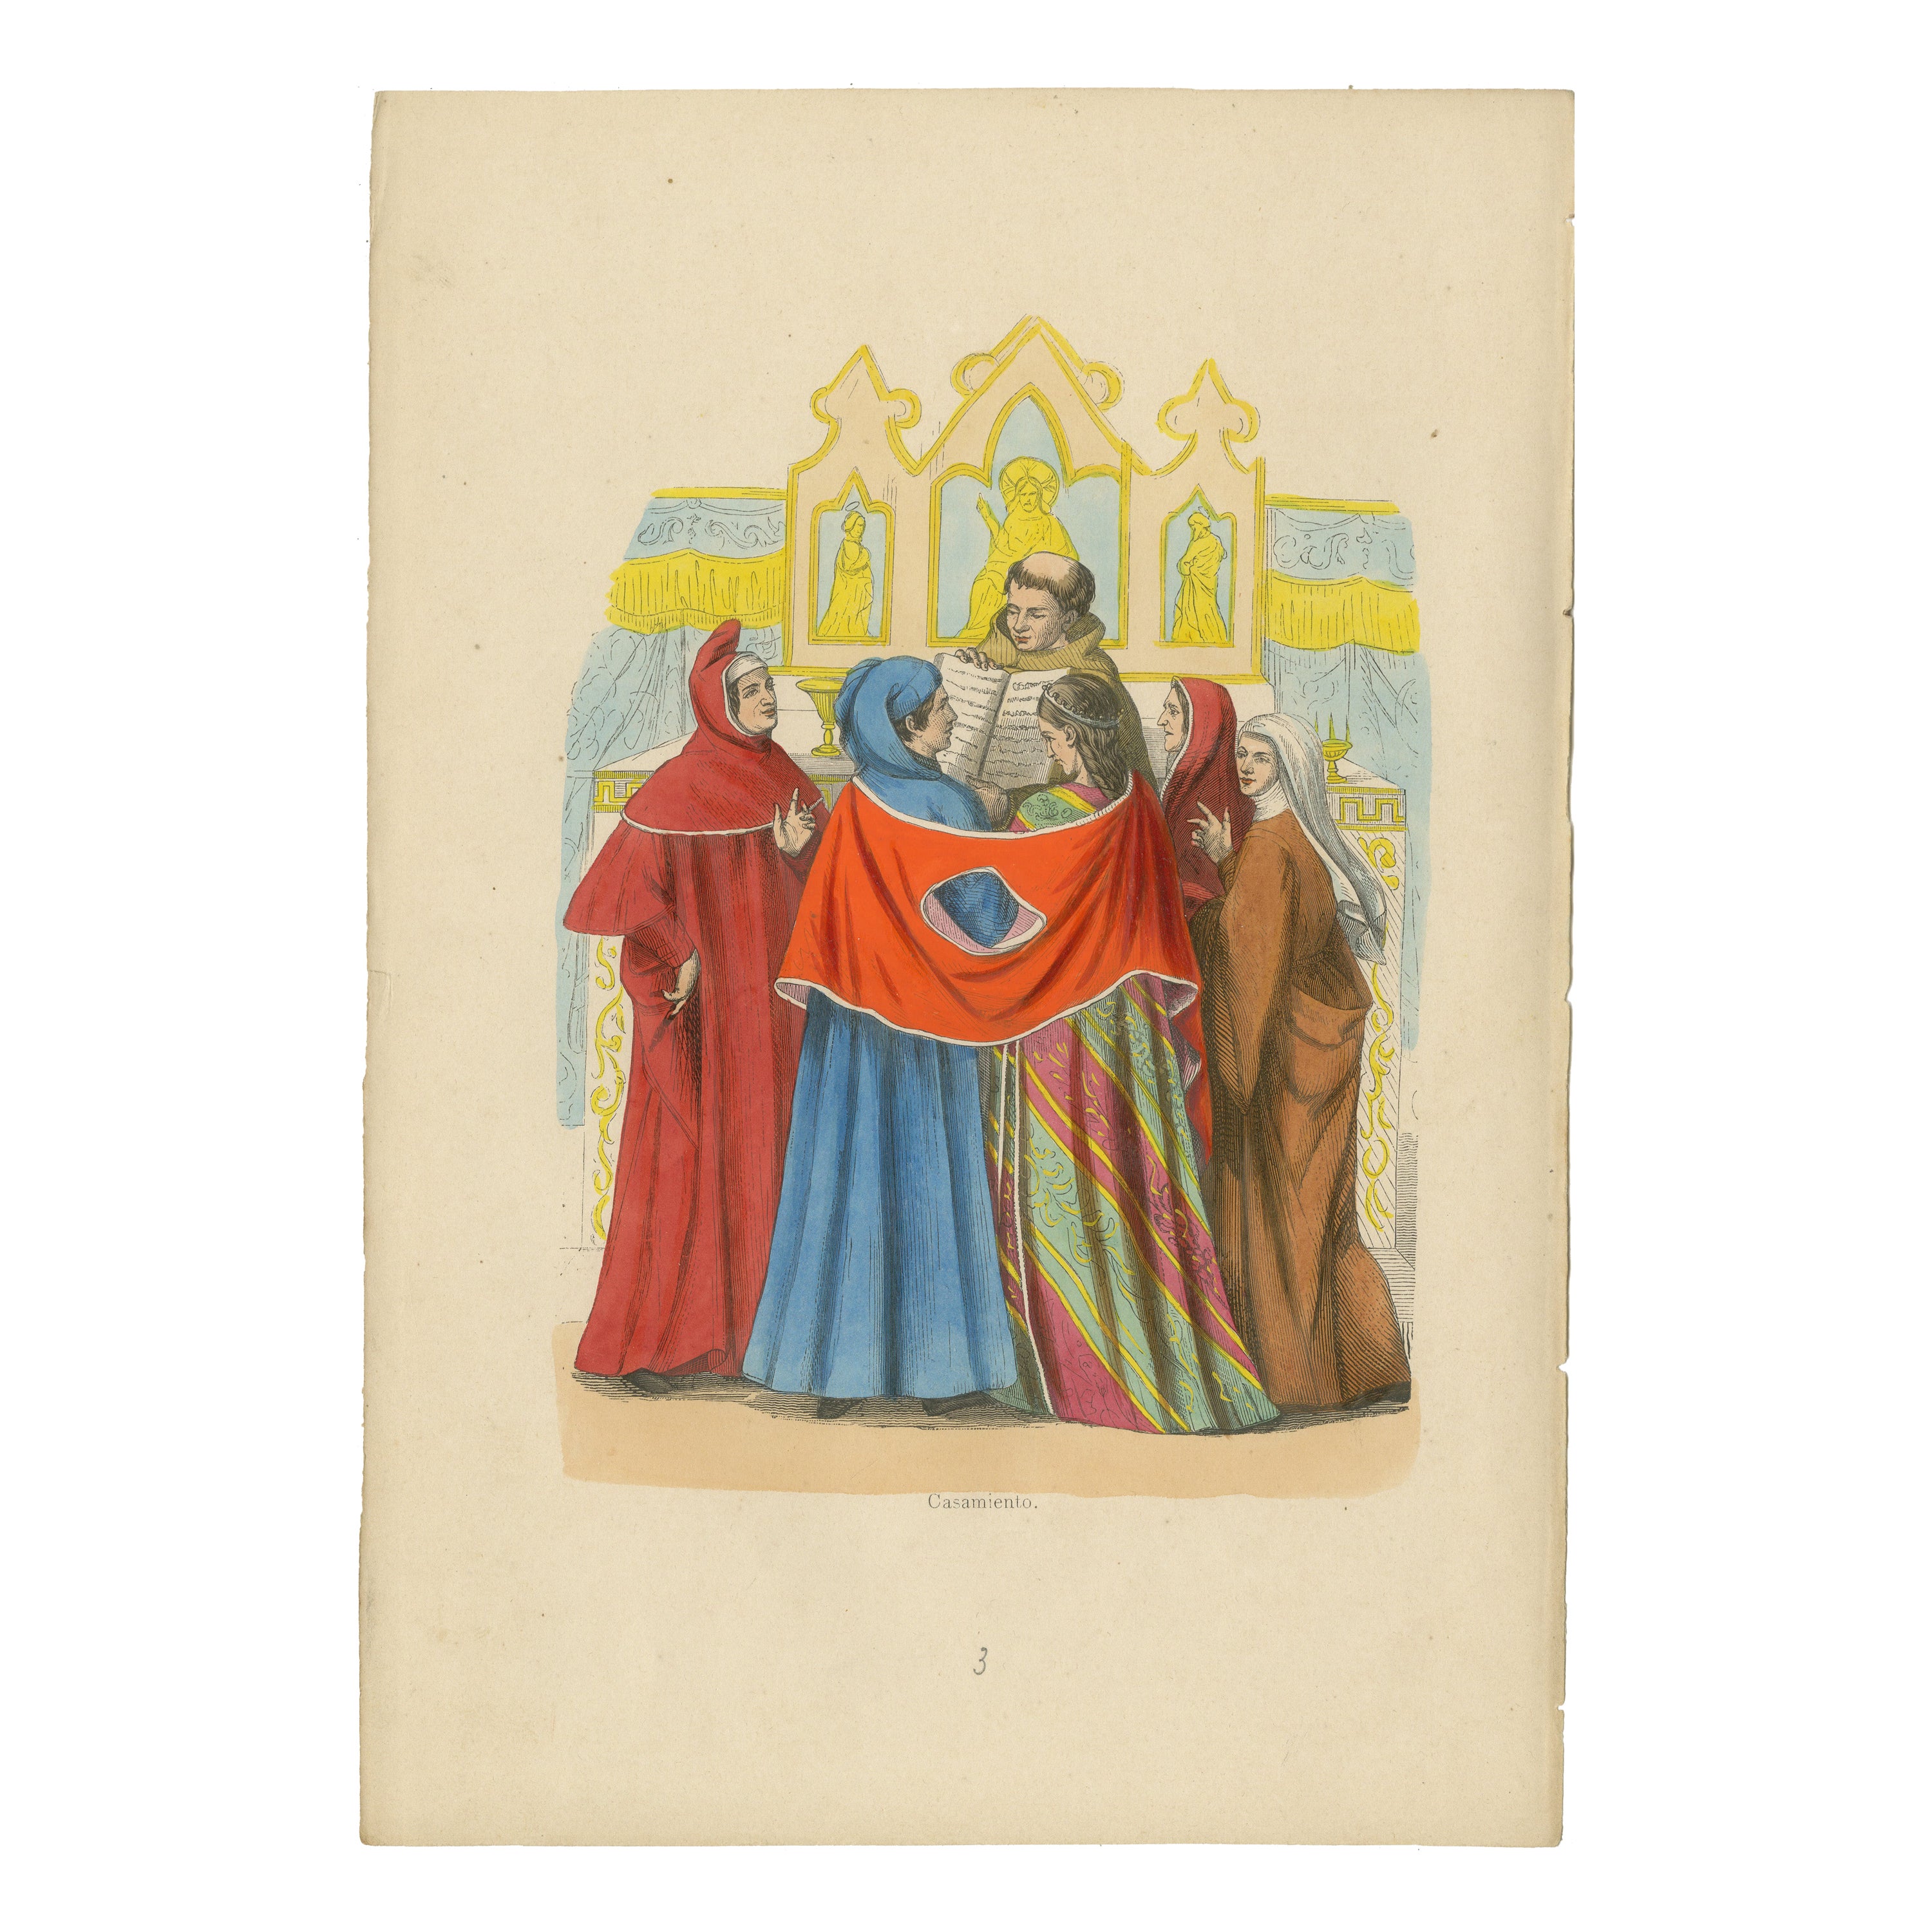 Matrimony médiévale : une union dans les halls gothiques, colorée à la main en 1847